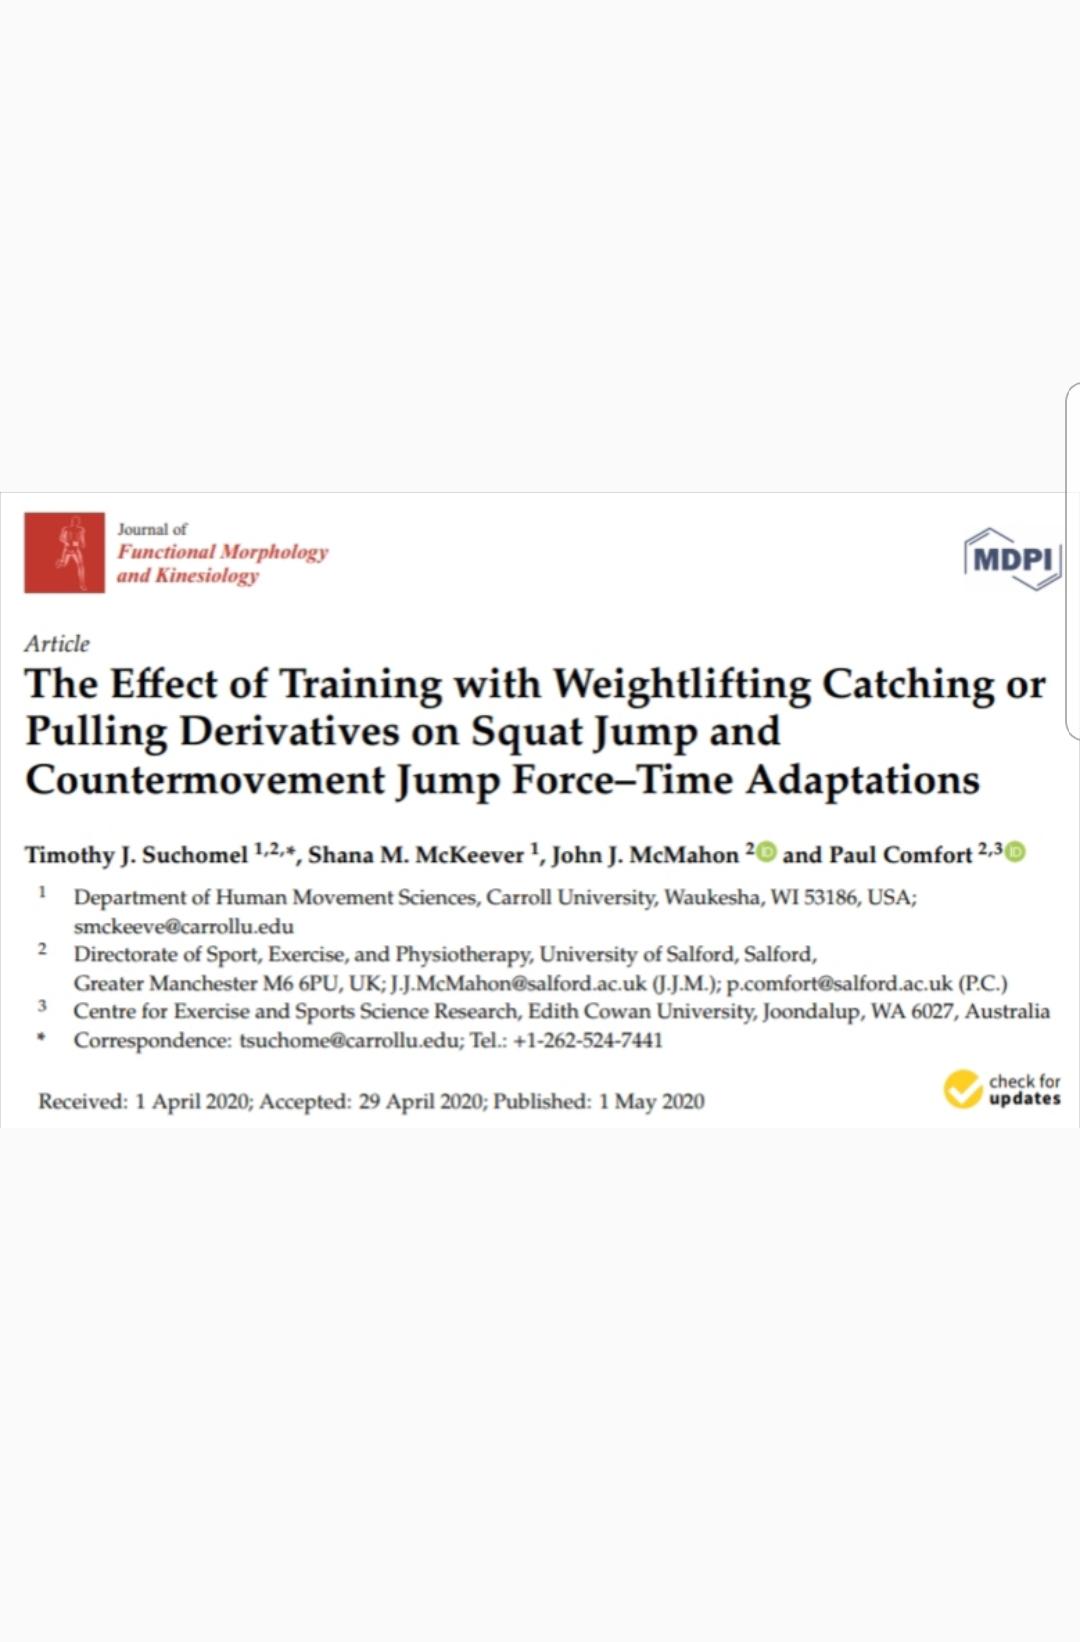 O efeito do treinamento com levantamento de pesos( "catch" e "pull") nos saltos verticais...